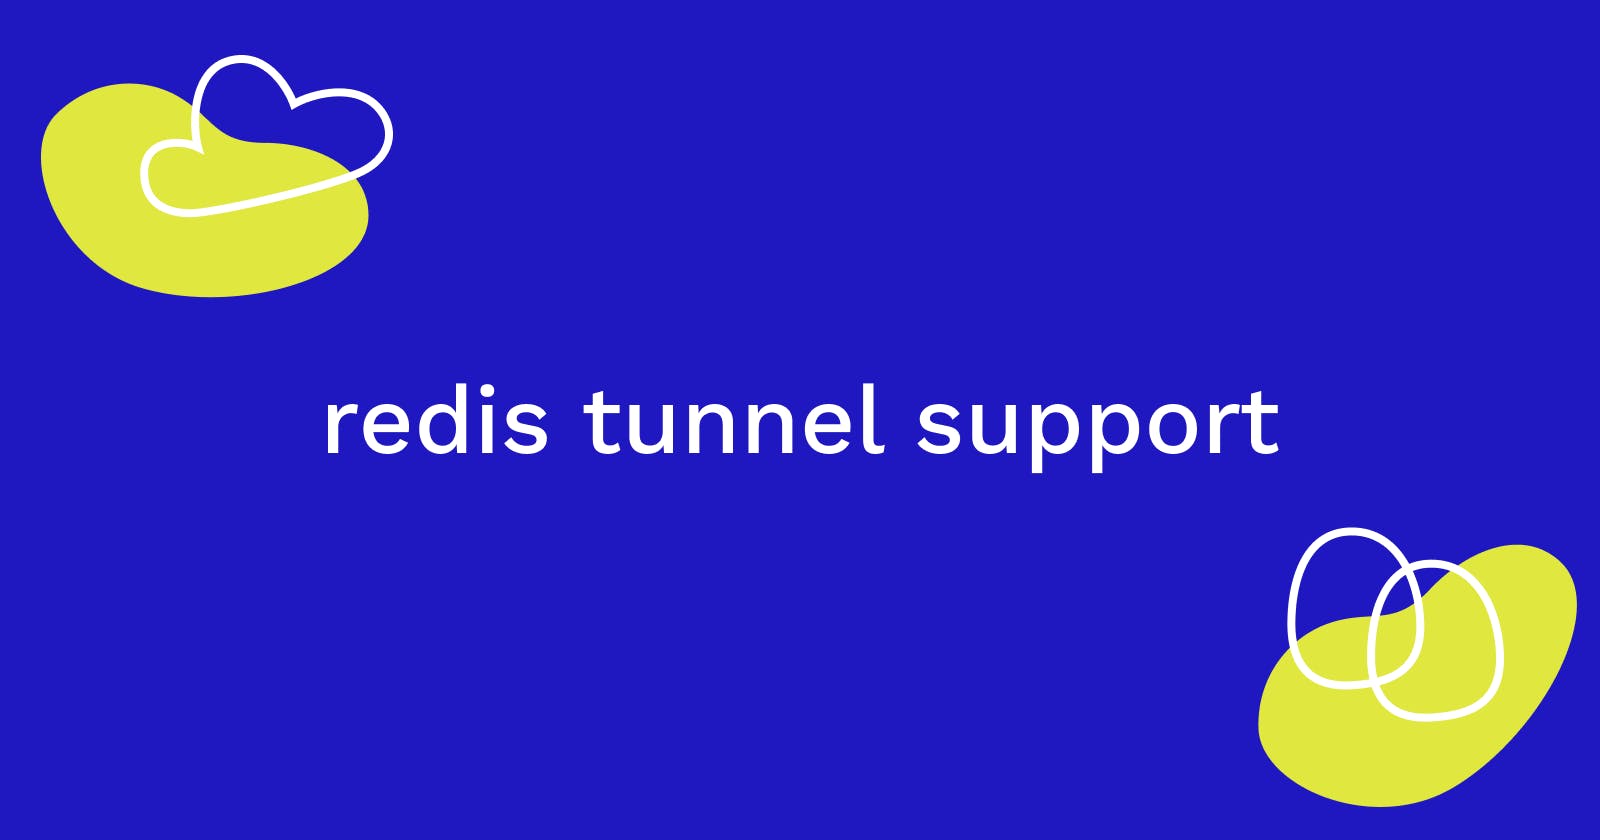 pebl cli redis tunnel support